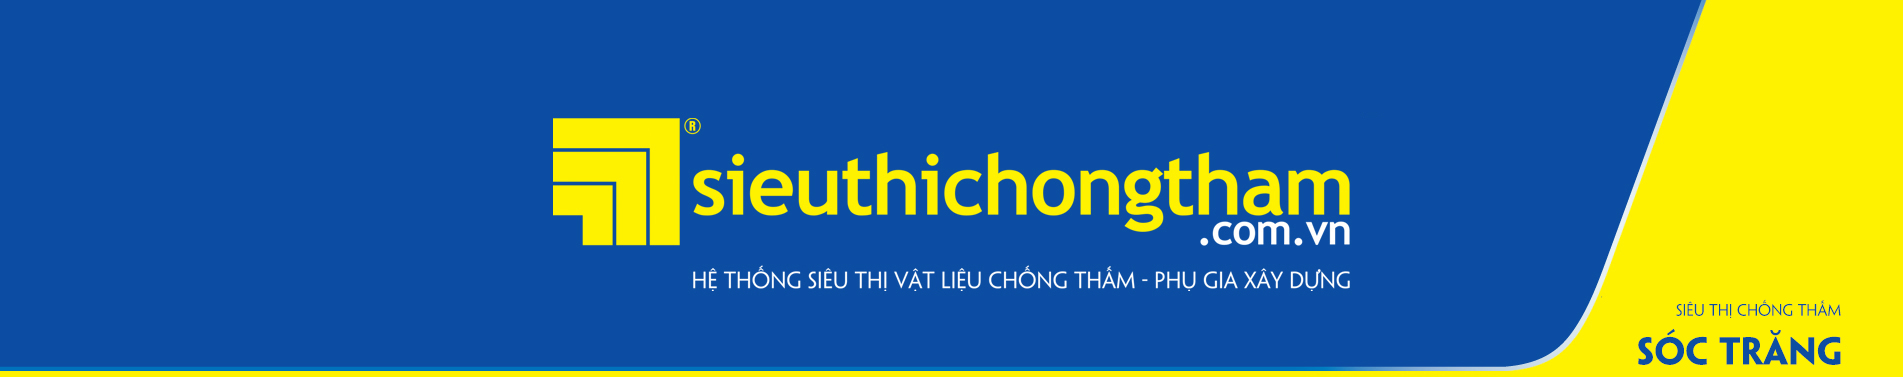 Sieu Thi Chong Tham Soc Trang